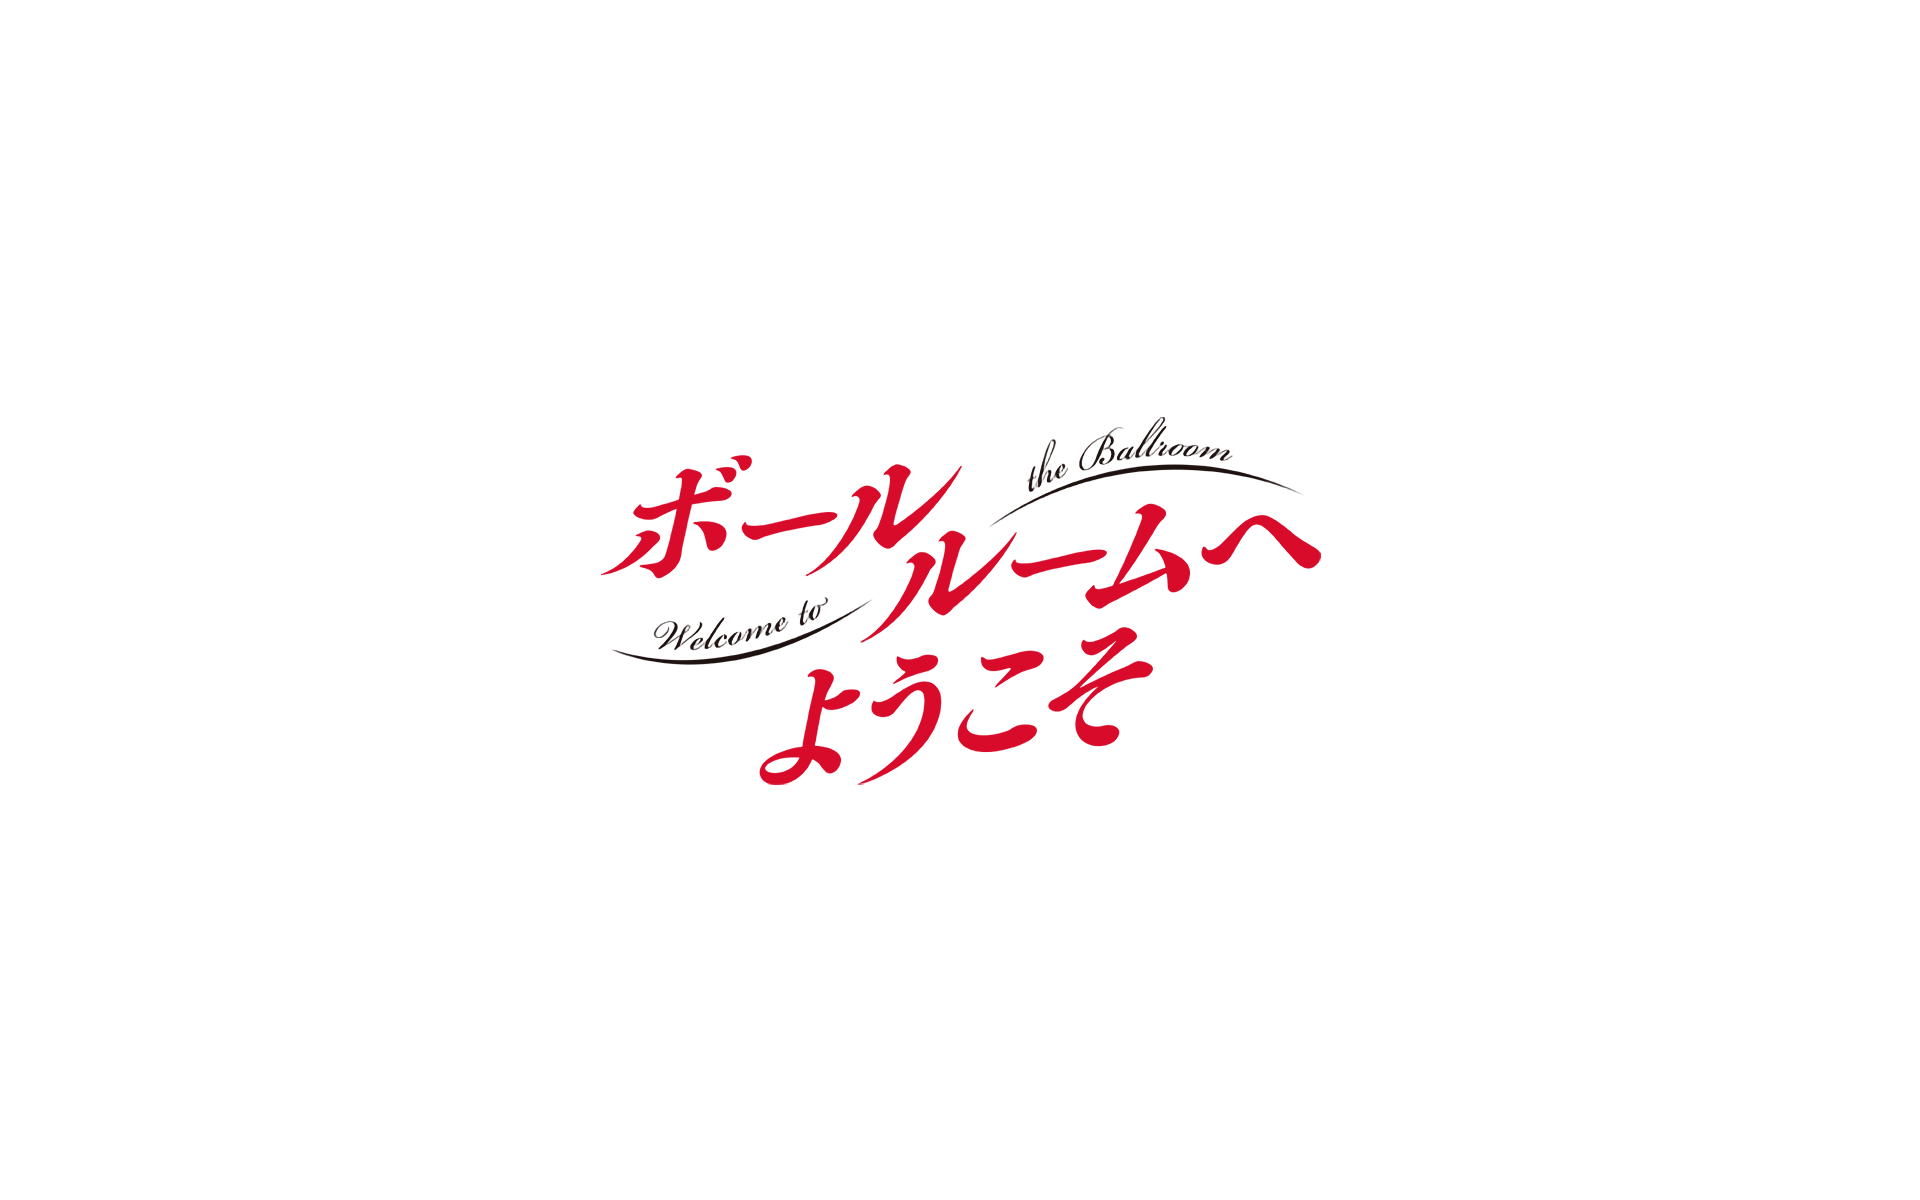 Anime Ballroom E Youkoso 1920x1200